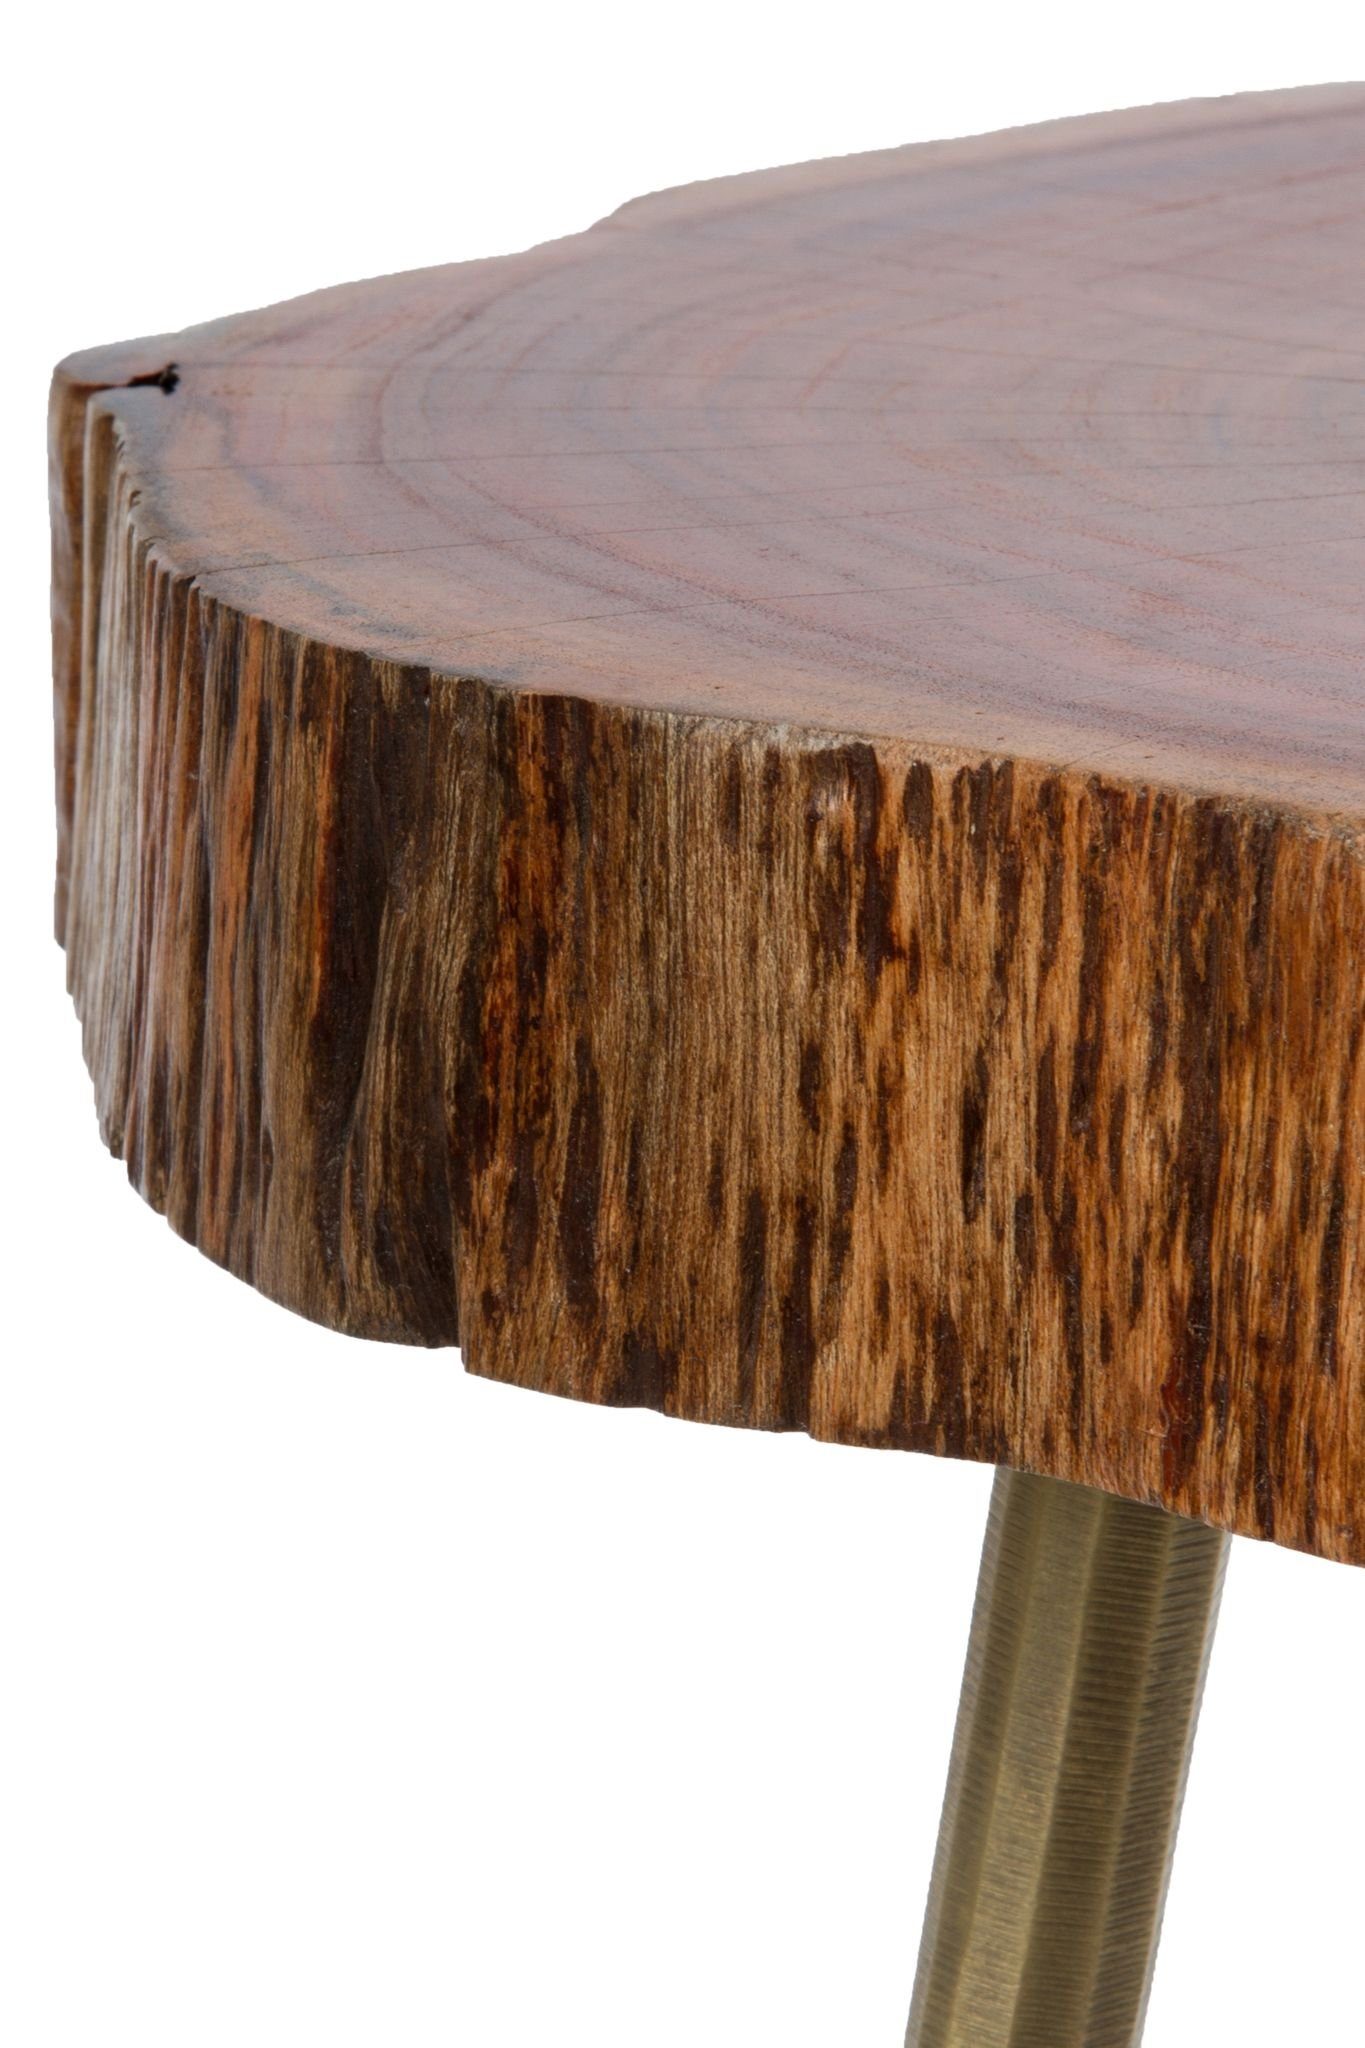 cm (FALSCH), rustikal Holz messing Beistelltisch elbmöbel 28x46x36 Beistelltisch mit Couchtisch Ablage: Messingfüllung